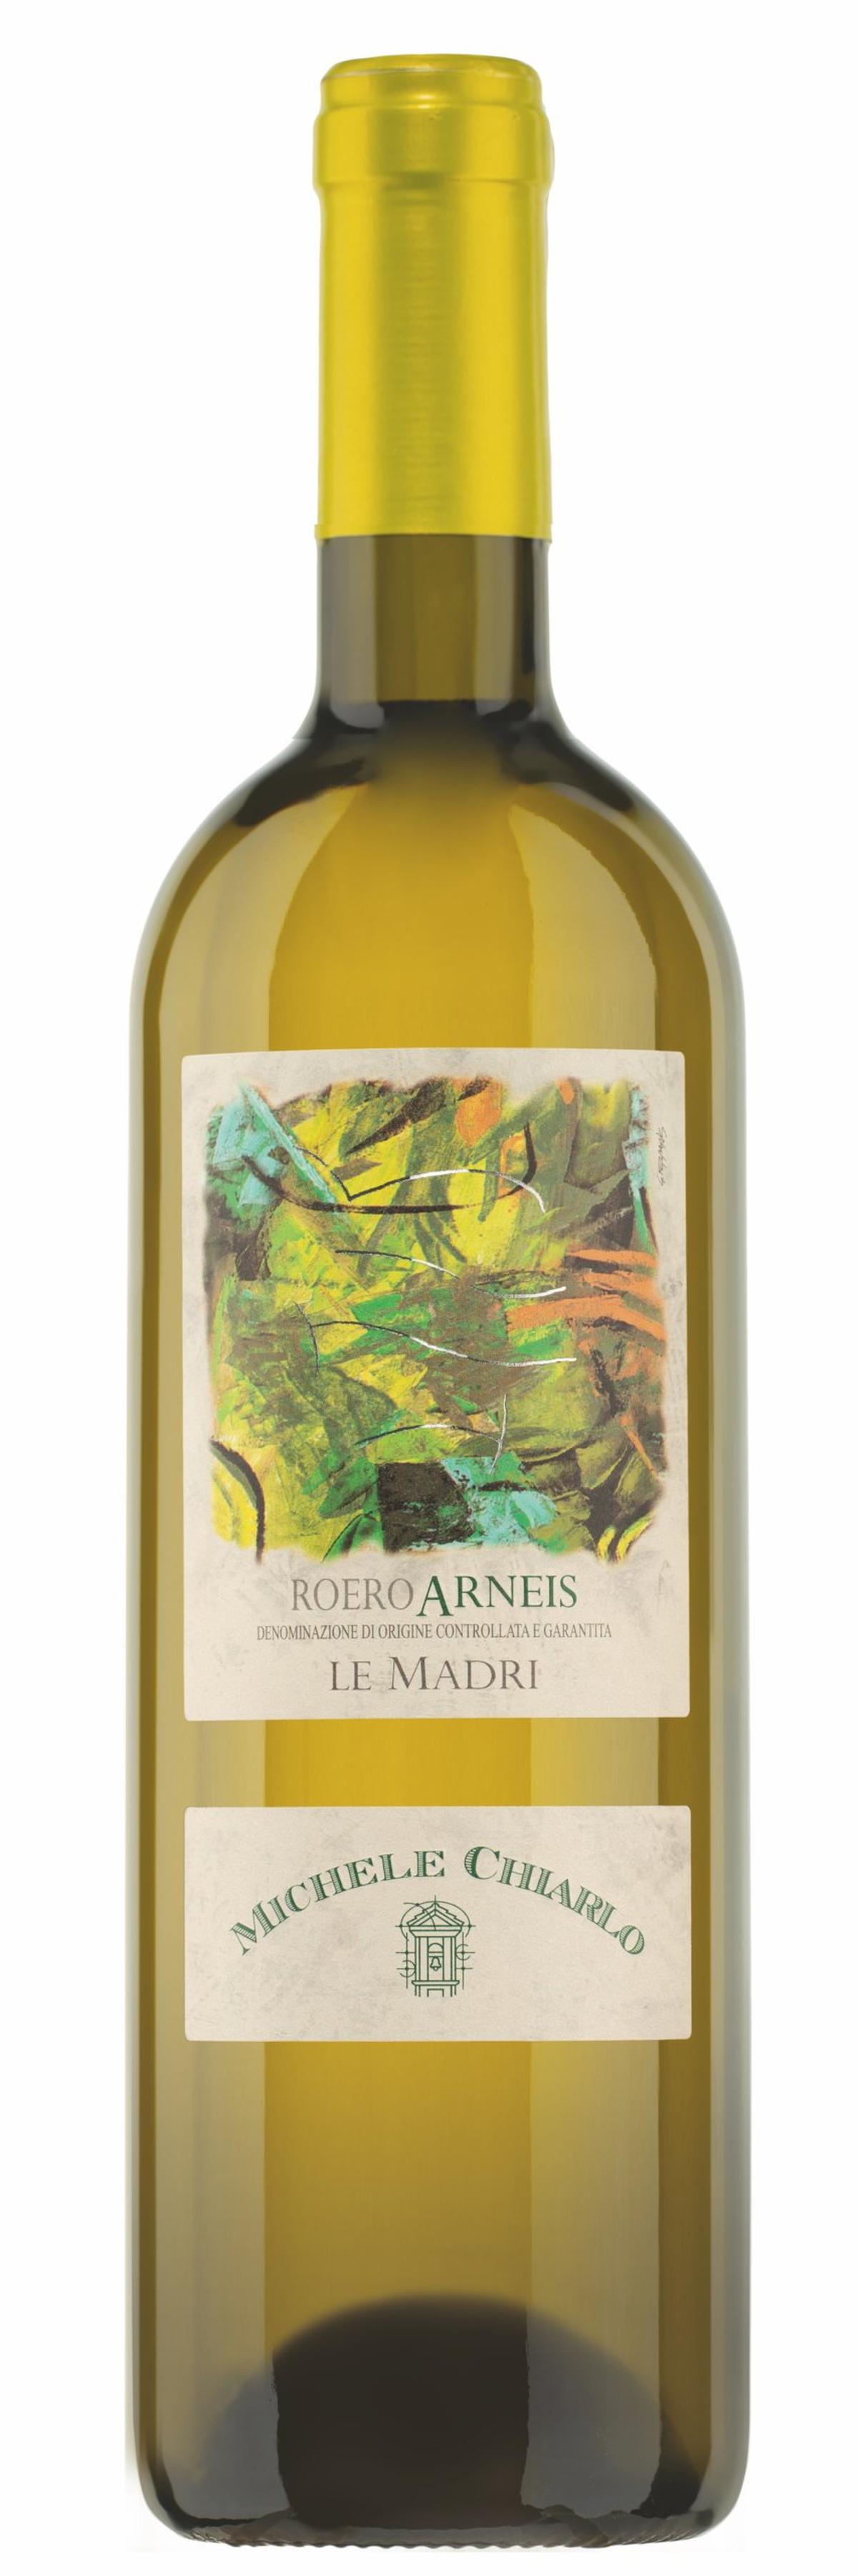 Weissweine aus der Rebsorte Arneis harmonieren gut mit geschmolzenem Käse. Zum Beispiel der Roero Arneis von Michele Chiarlo.